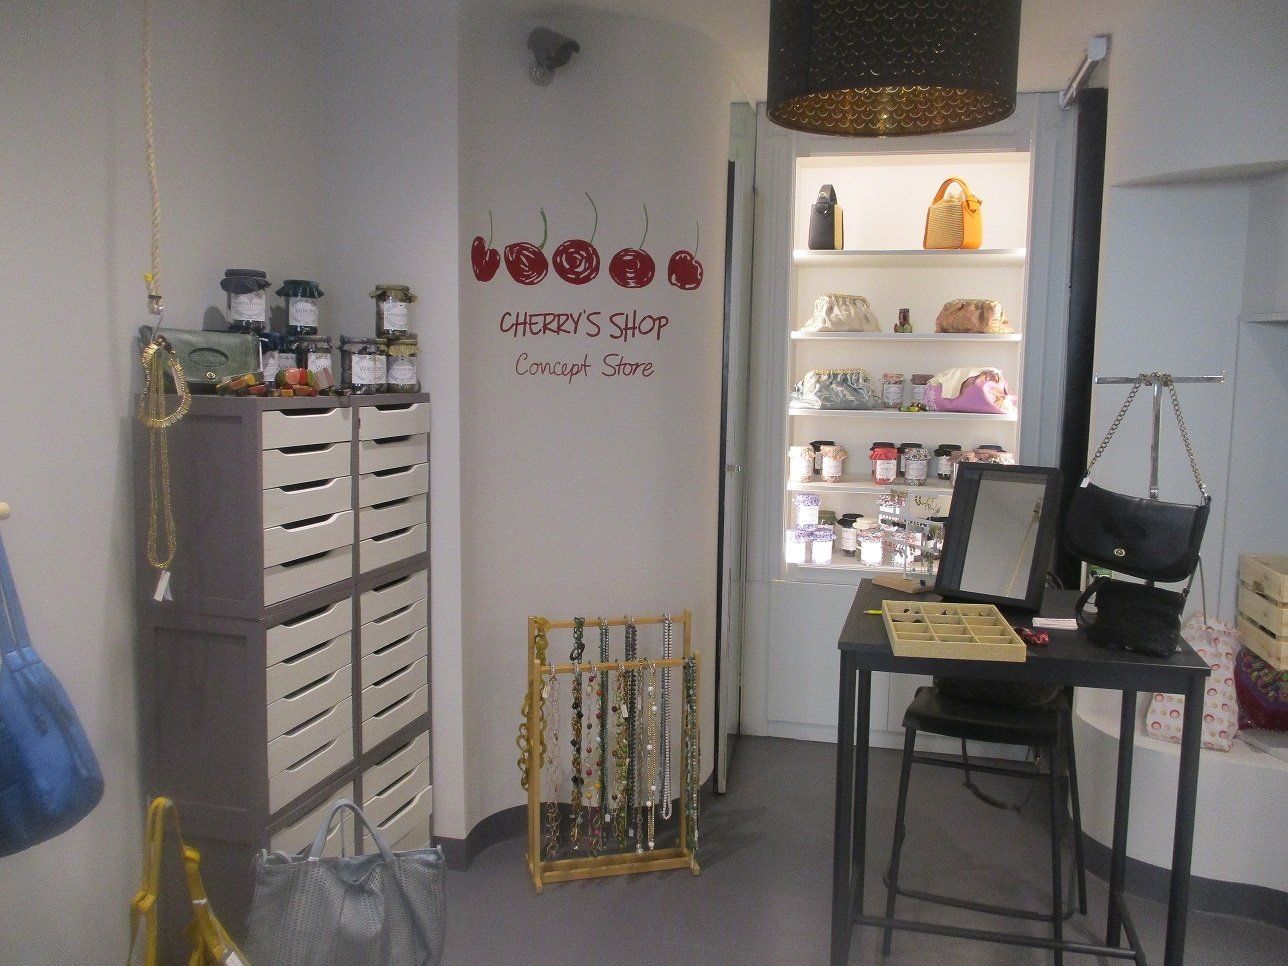 cherry's shop concept store gioielleria